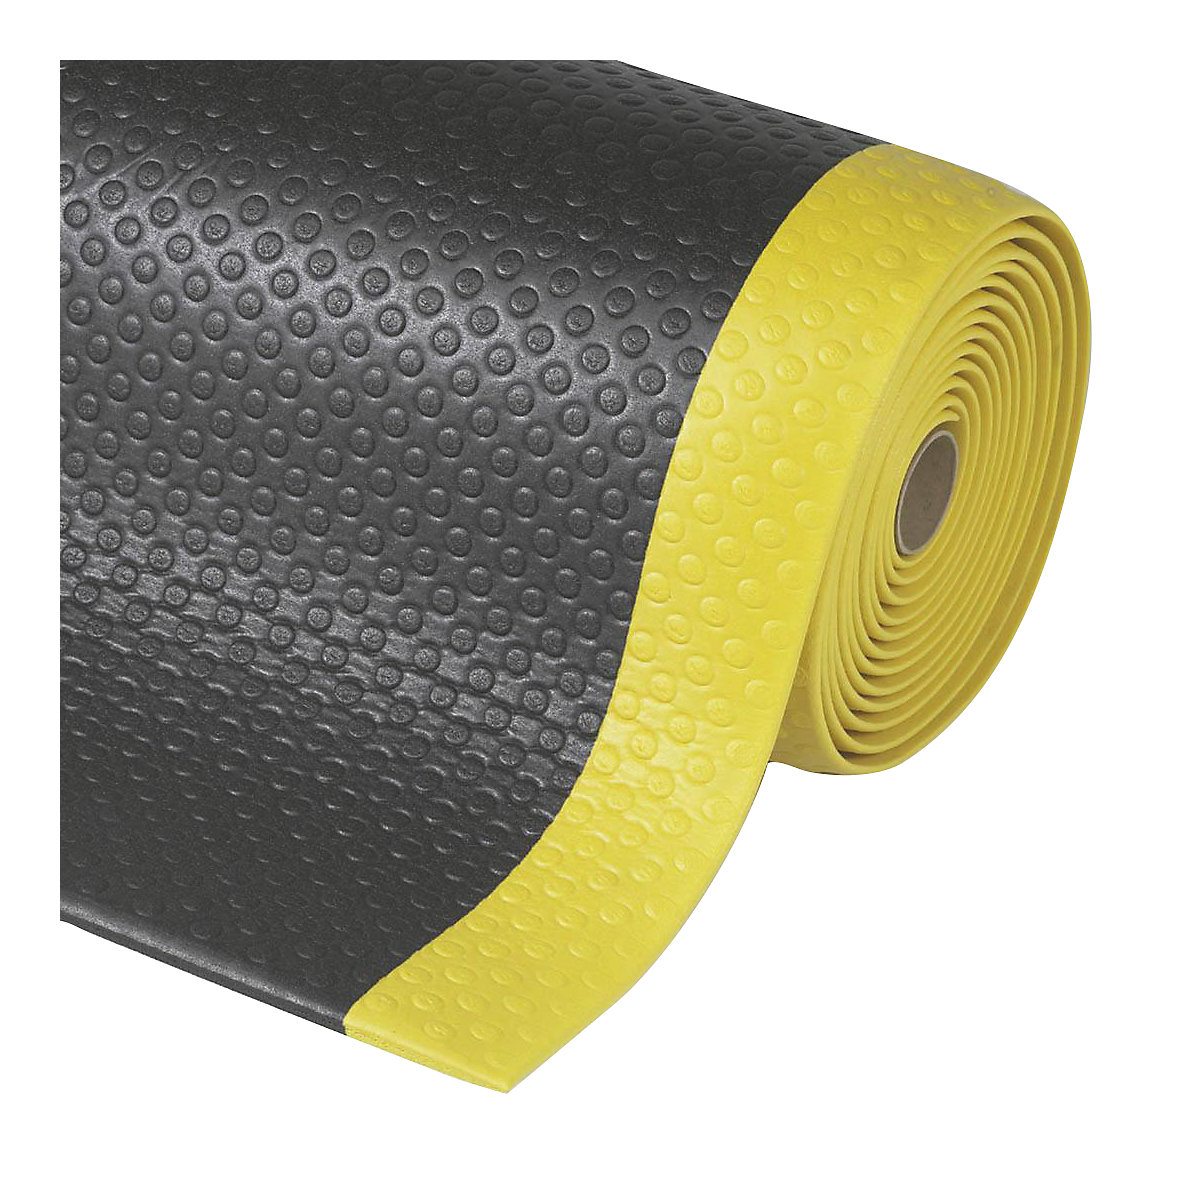 Tapis anti-fatigue Bubble Sof-Tred™ – NOTRAX, prix au m, en mousse de vinyle, noir / jaune, largeur 1220 mm-5